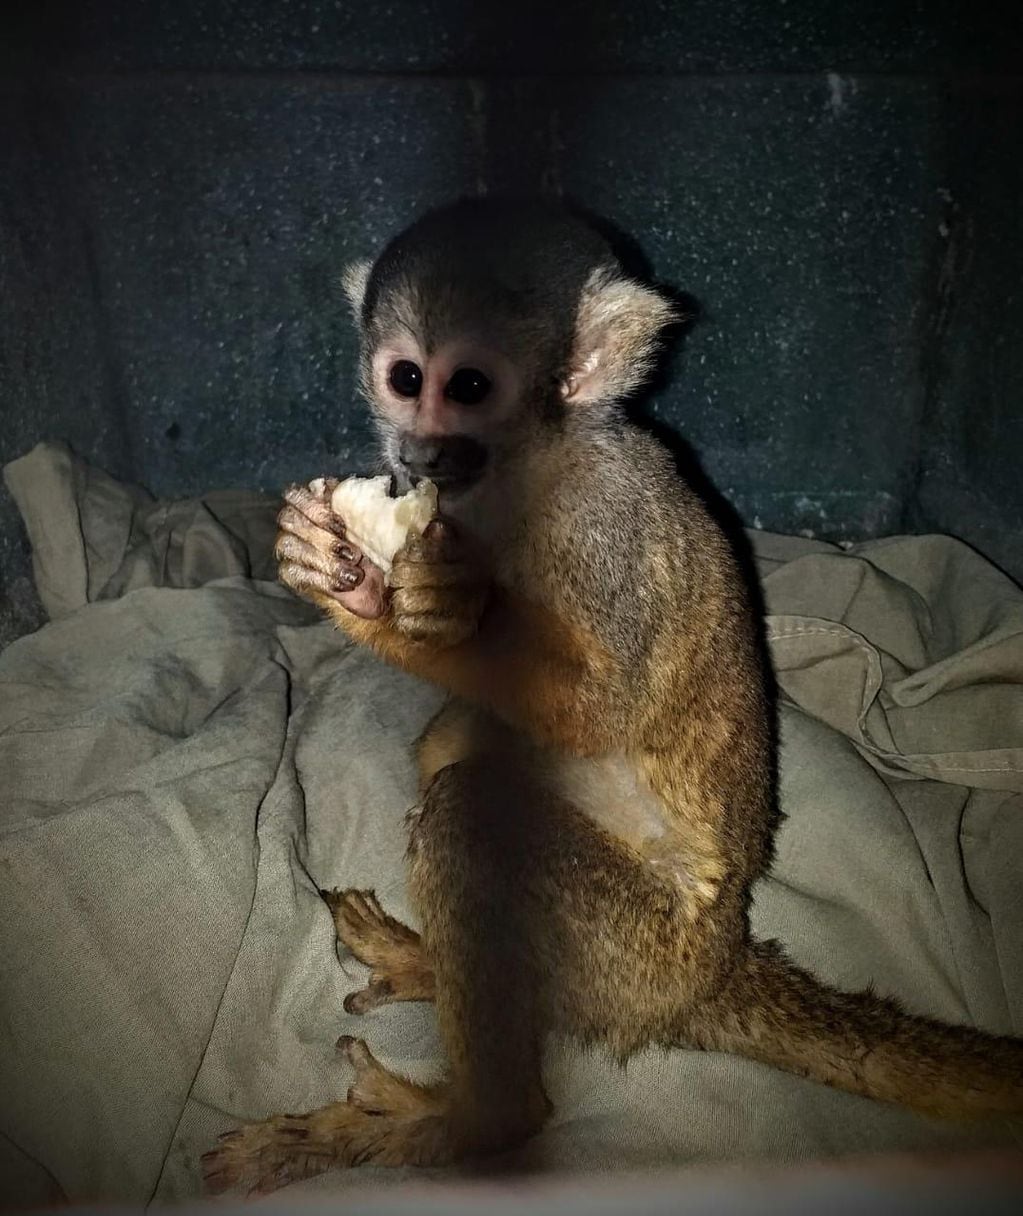 Ambiente y Seguridad rescatan a un mono cautivo que estaba atado en una casa en Guaymallén